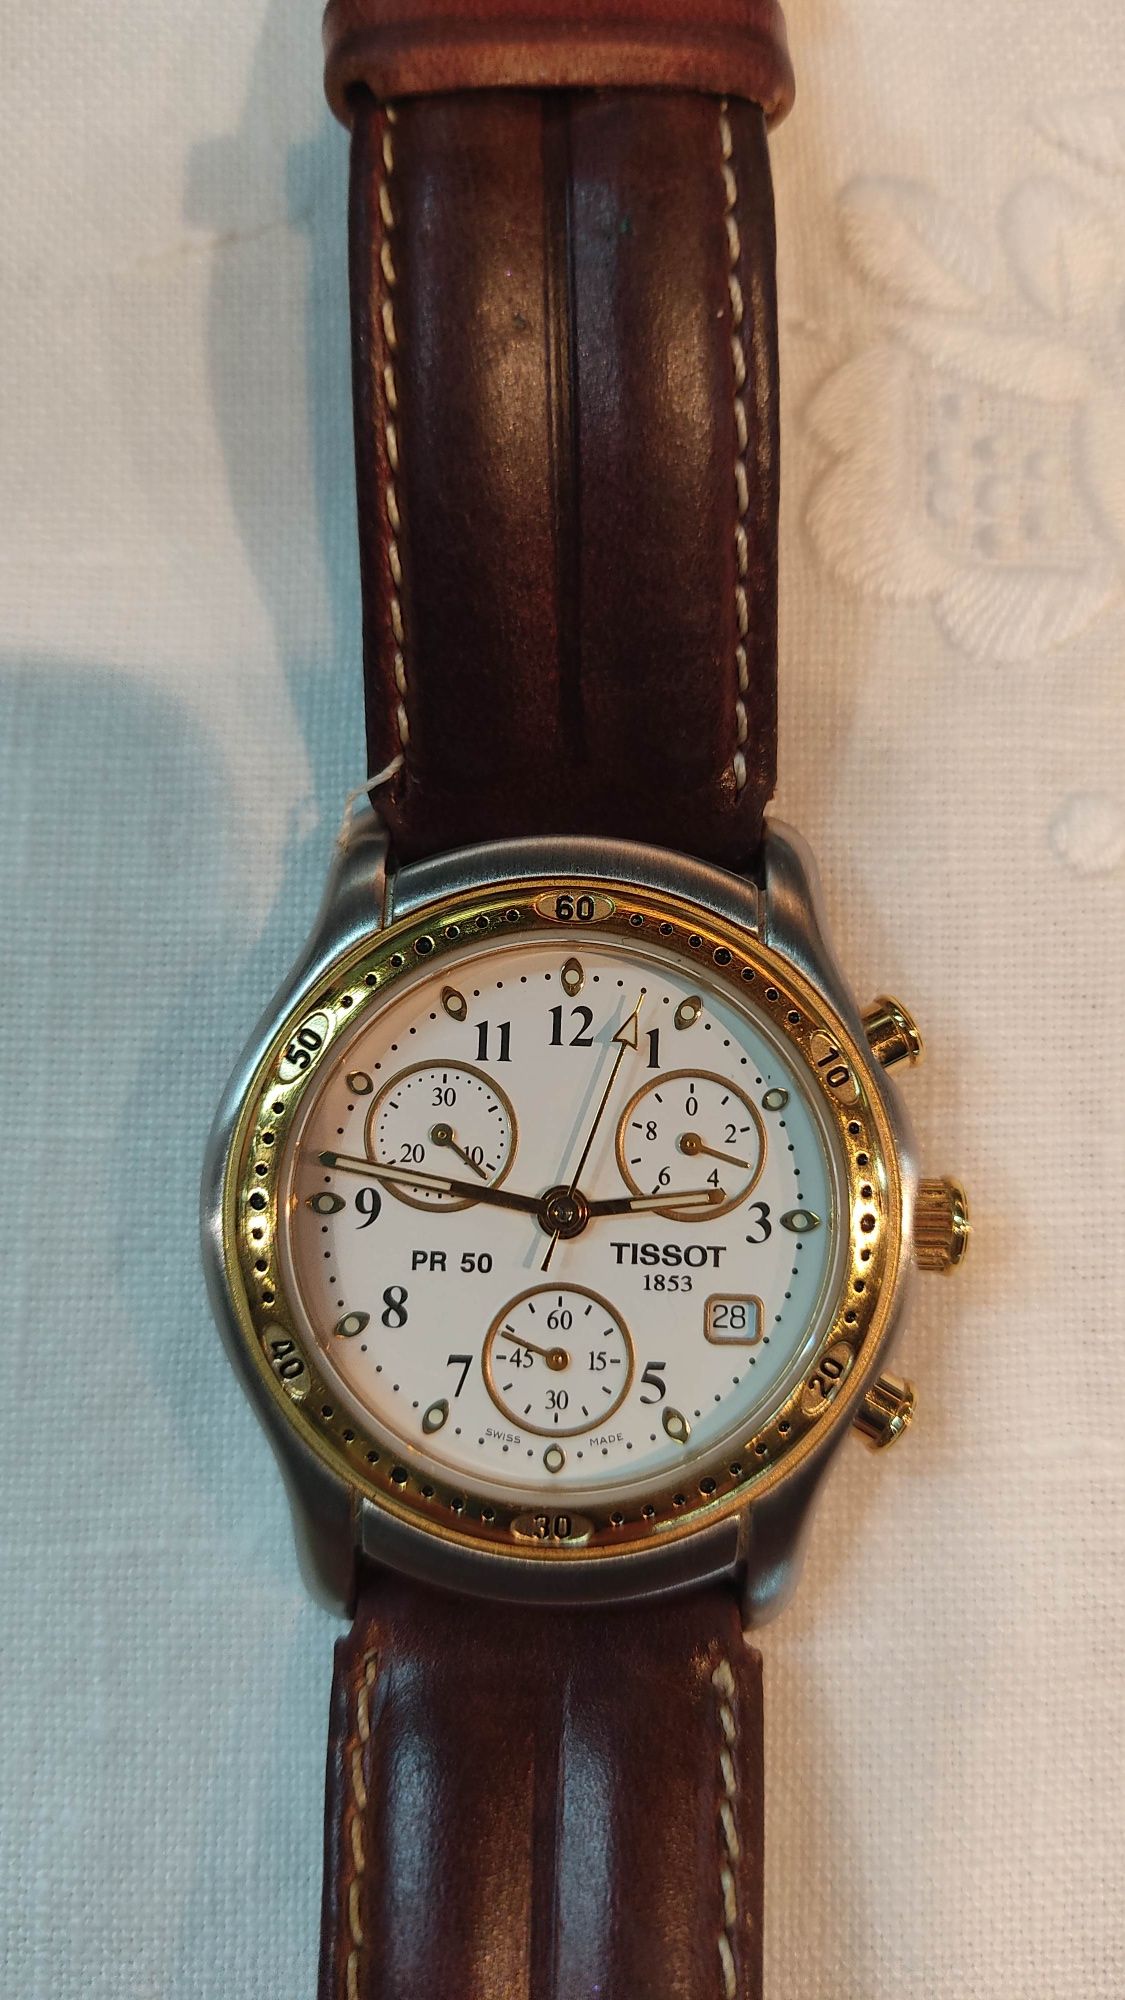 Elegante relógio Tissot PR 50 ótimo estado